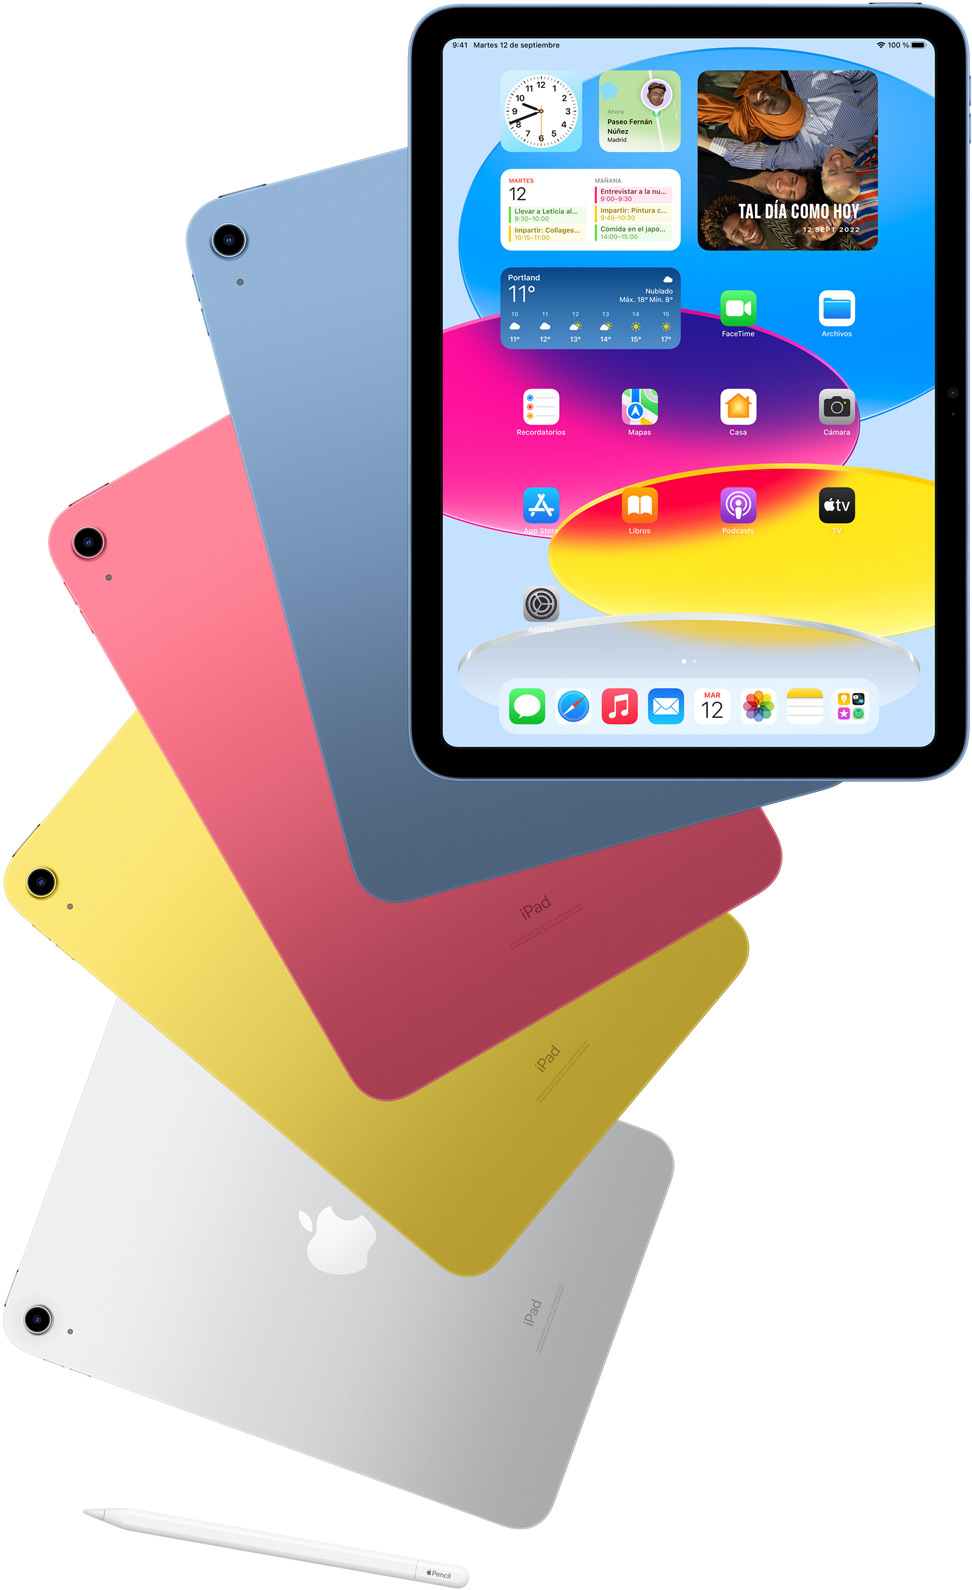 Vista frontal de un iPad que muestra la pantalla de inicio, con cuatro dispositivos iPad detrás en azul, rosa, amarillo y plata. Se muestra un Apple Pencil debajo de los dispositivos iPad.